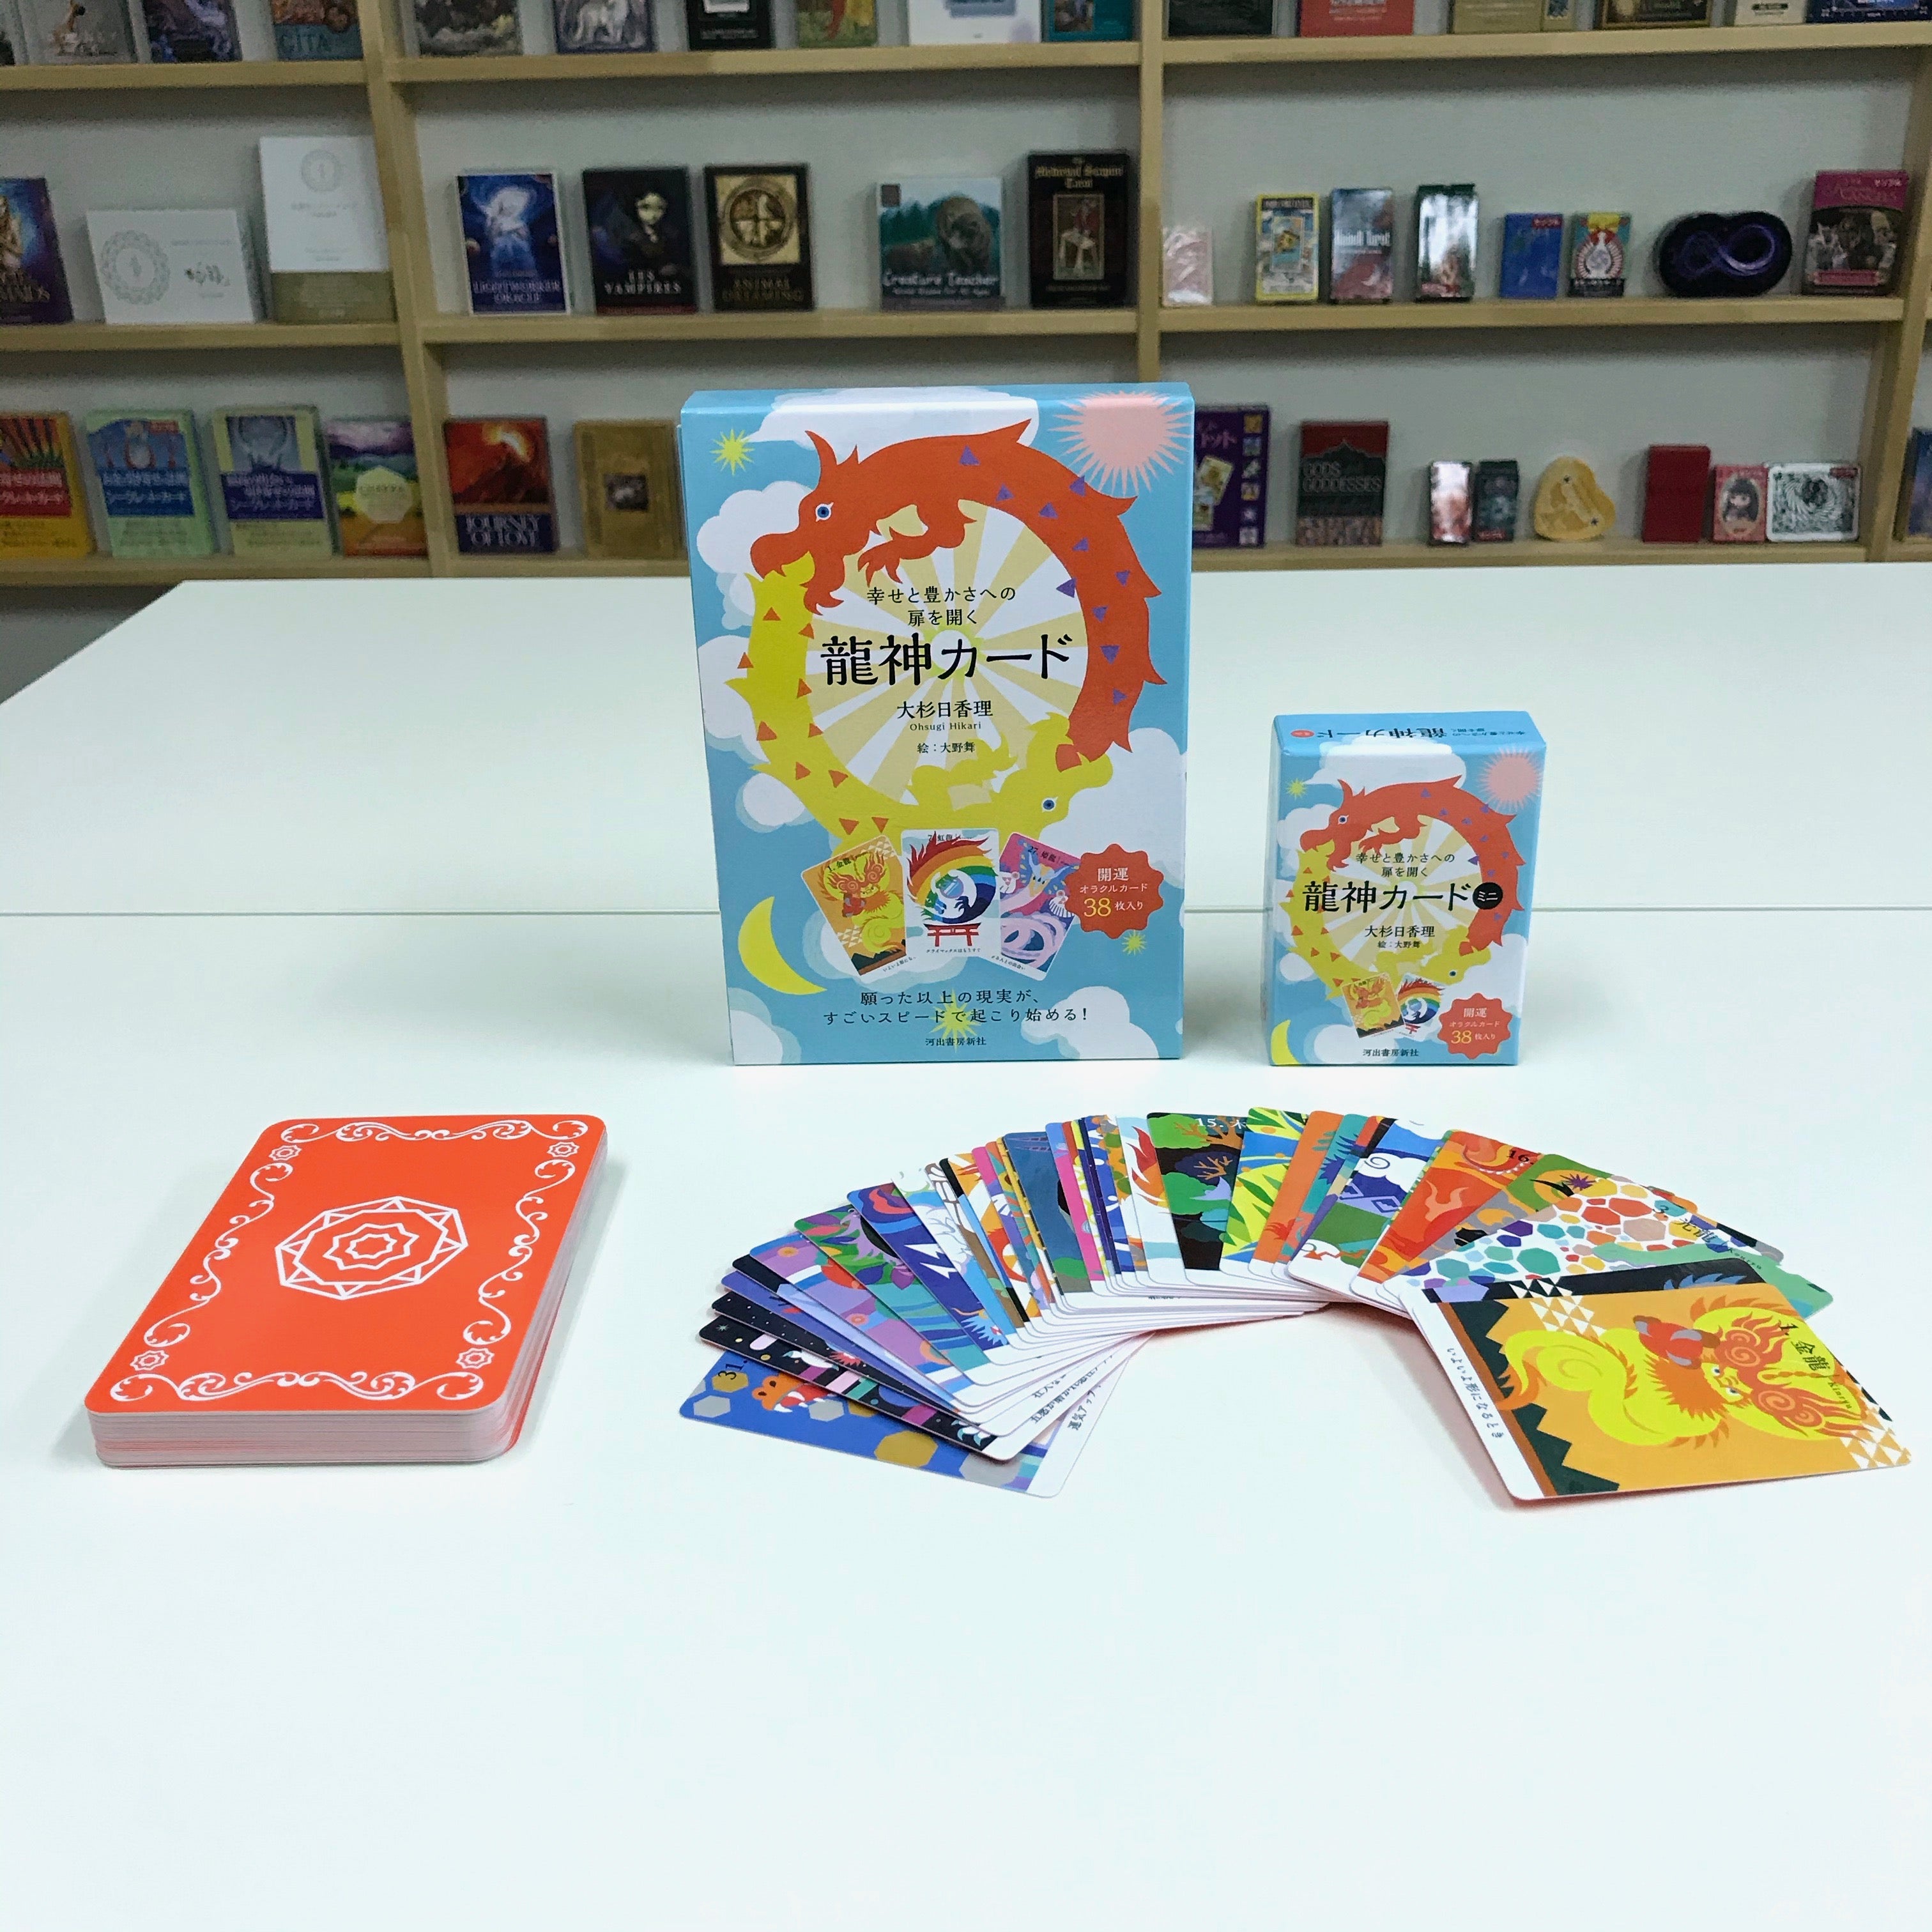 幸せと豊かさへの扉を開く龍神カード ミニ』発売開始！ | 日本のオラクルカード・タロットカード全集 公式ブログ